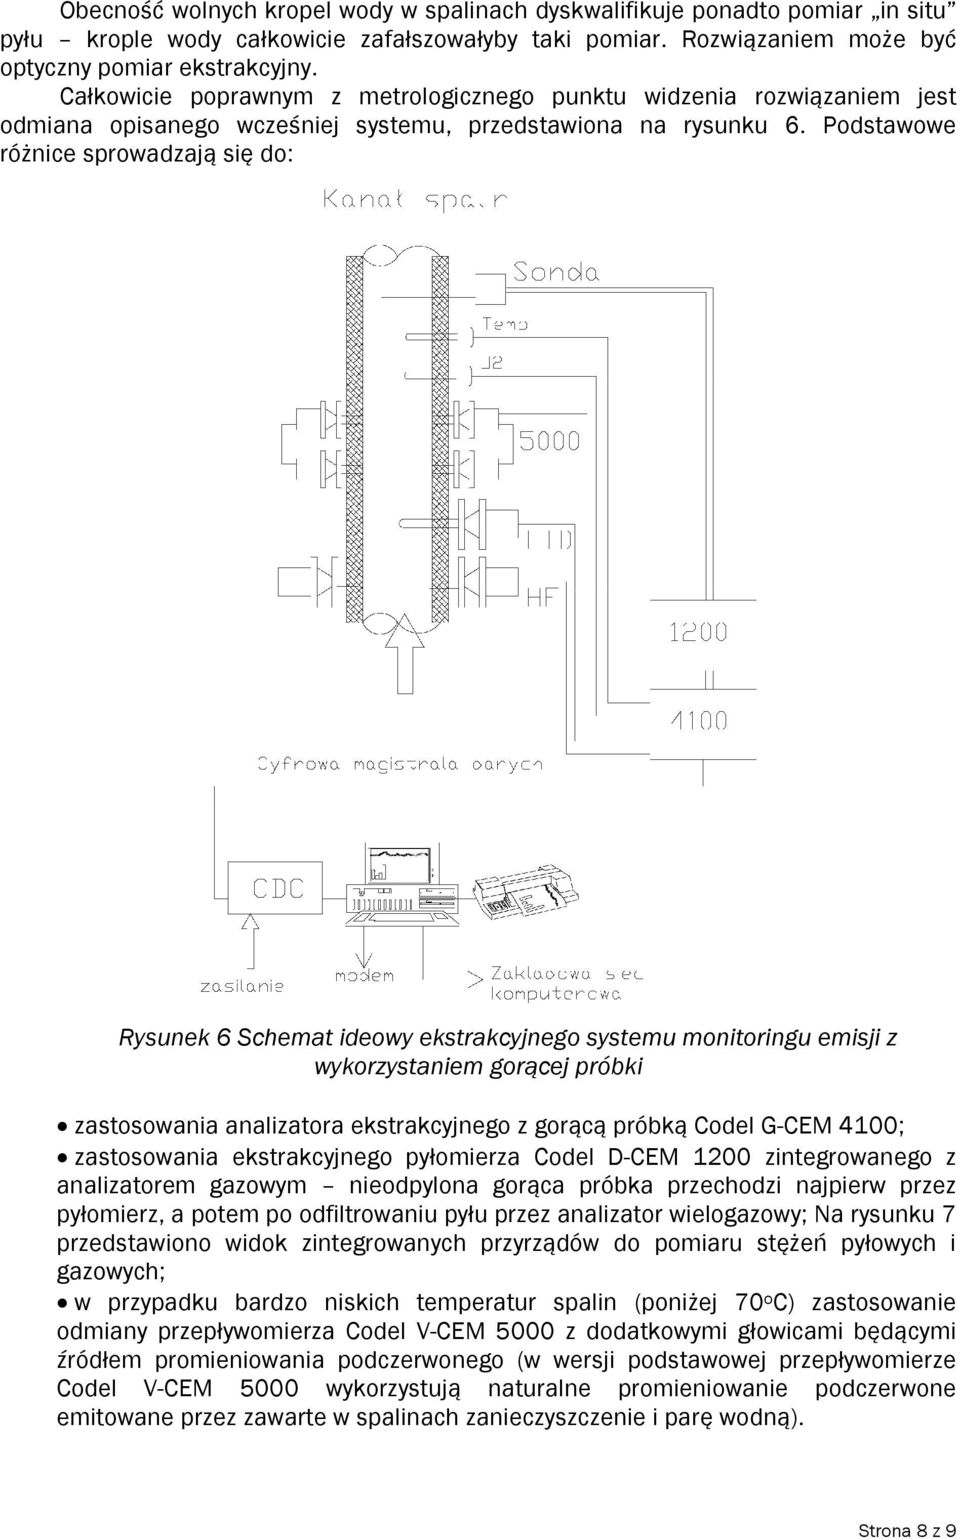 Podstawowe różnice sprowadzają się do: Rysunek 6 Schemat ideowy ekstrakcyjnego systemu monitoringu emisji z wykorzystaniem gorącej próbki zastosowania analizatora ekstrakcyjnego z gorącą próbką Codel